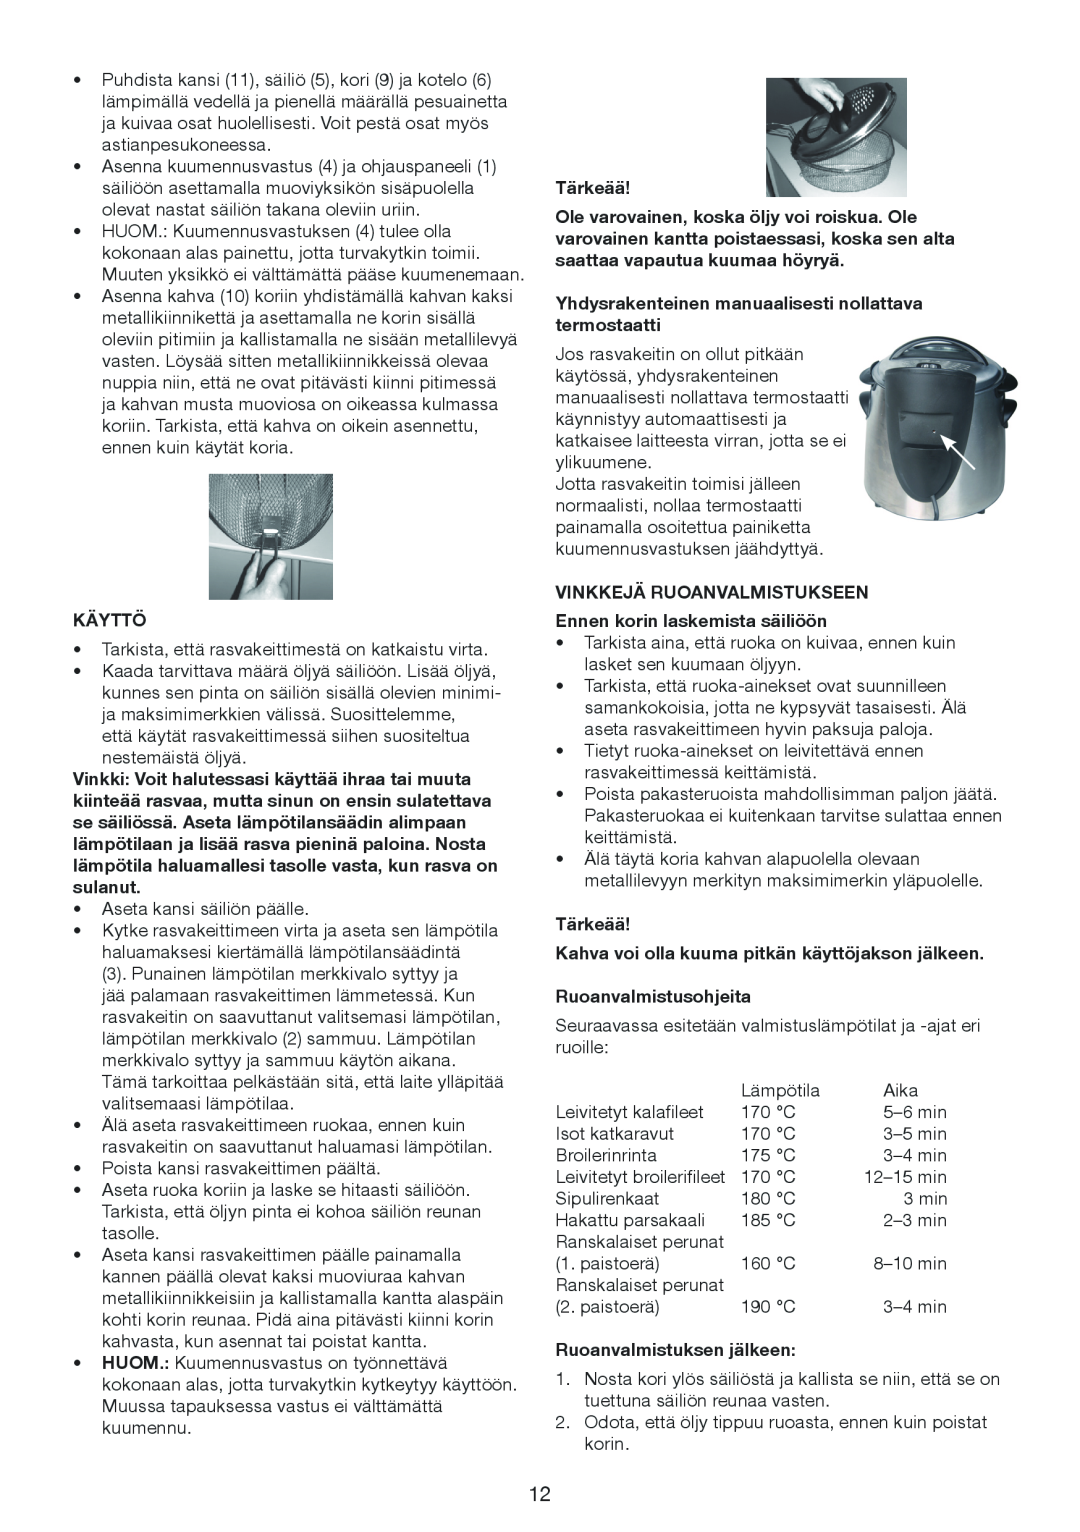 Melissa 643-198 manual Käyttö, Yhdysrakenteinen manuaalisesti nollattava termostaatti, Ruoanvalmistusohjeita, Tärkeää 